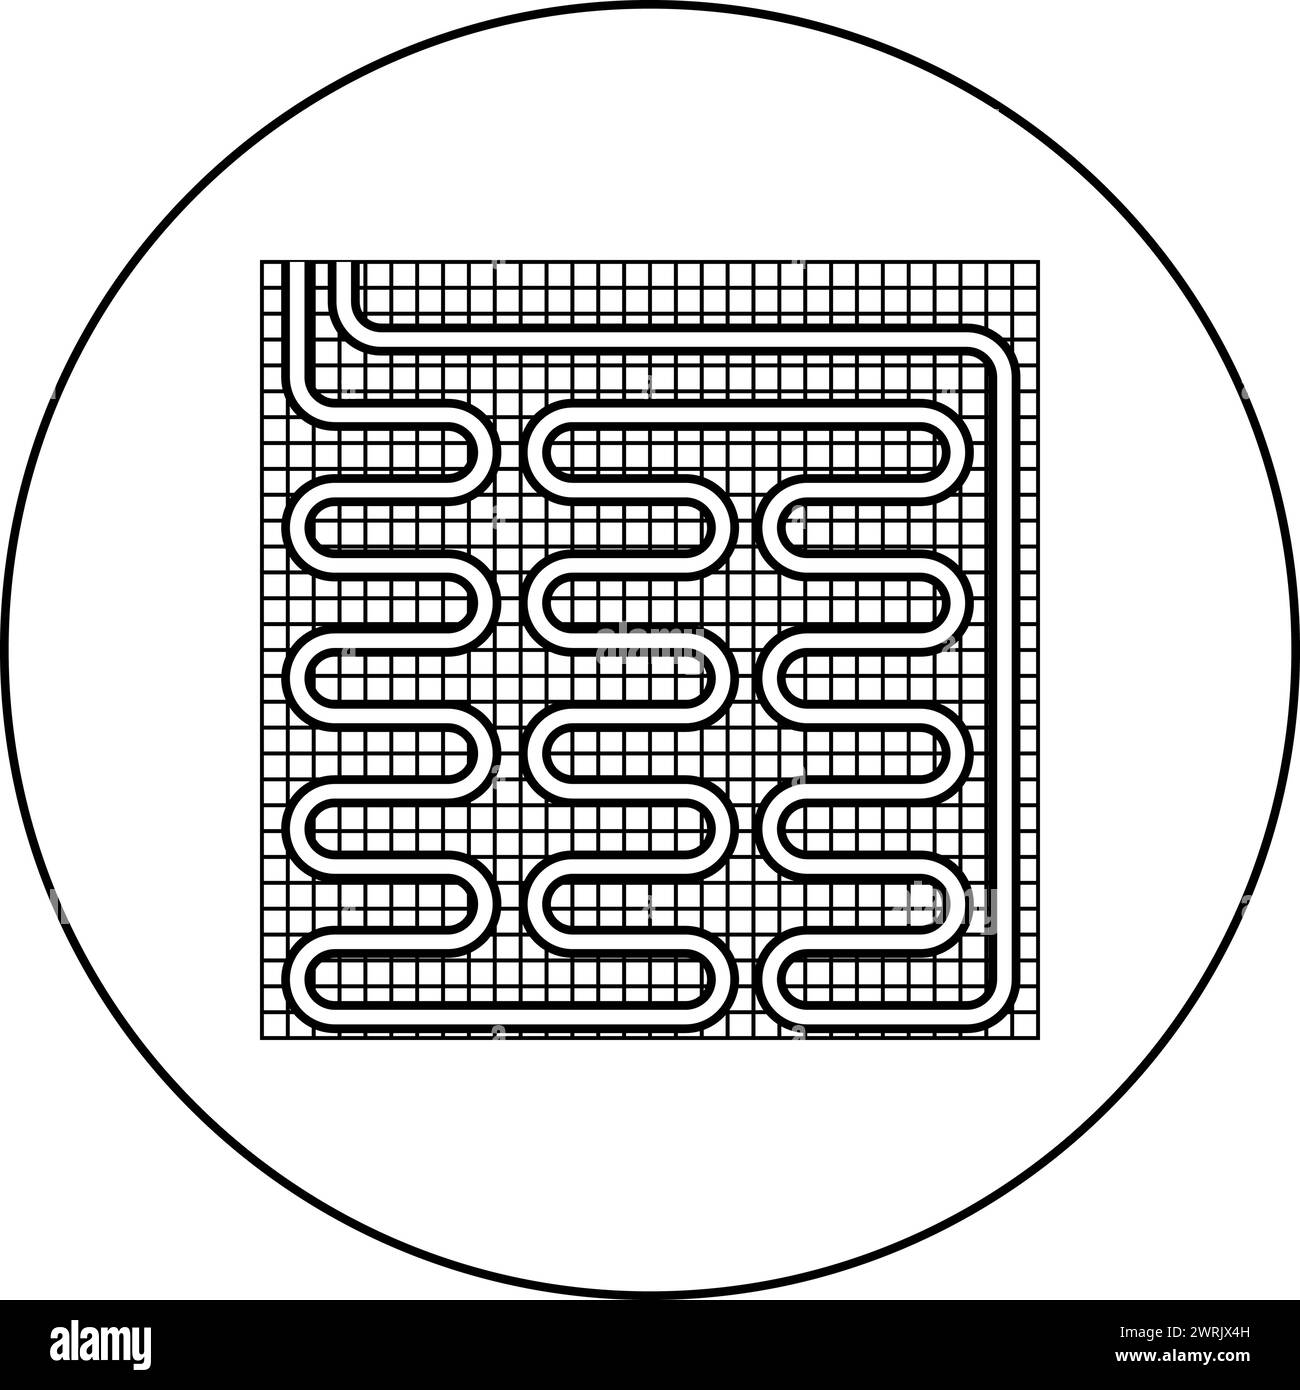 Elektrische Fußbodenheizung warm beheizt Symbol im Kreis rund schwarz Farbe Vektor Illustration Bild Umriss Kontur Linie dünn Stil einfach Stock Vektor